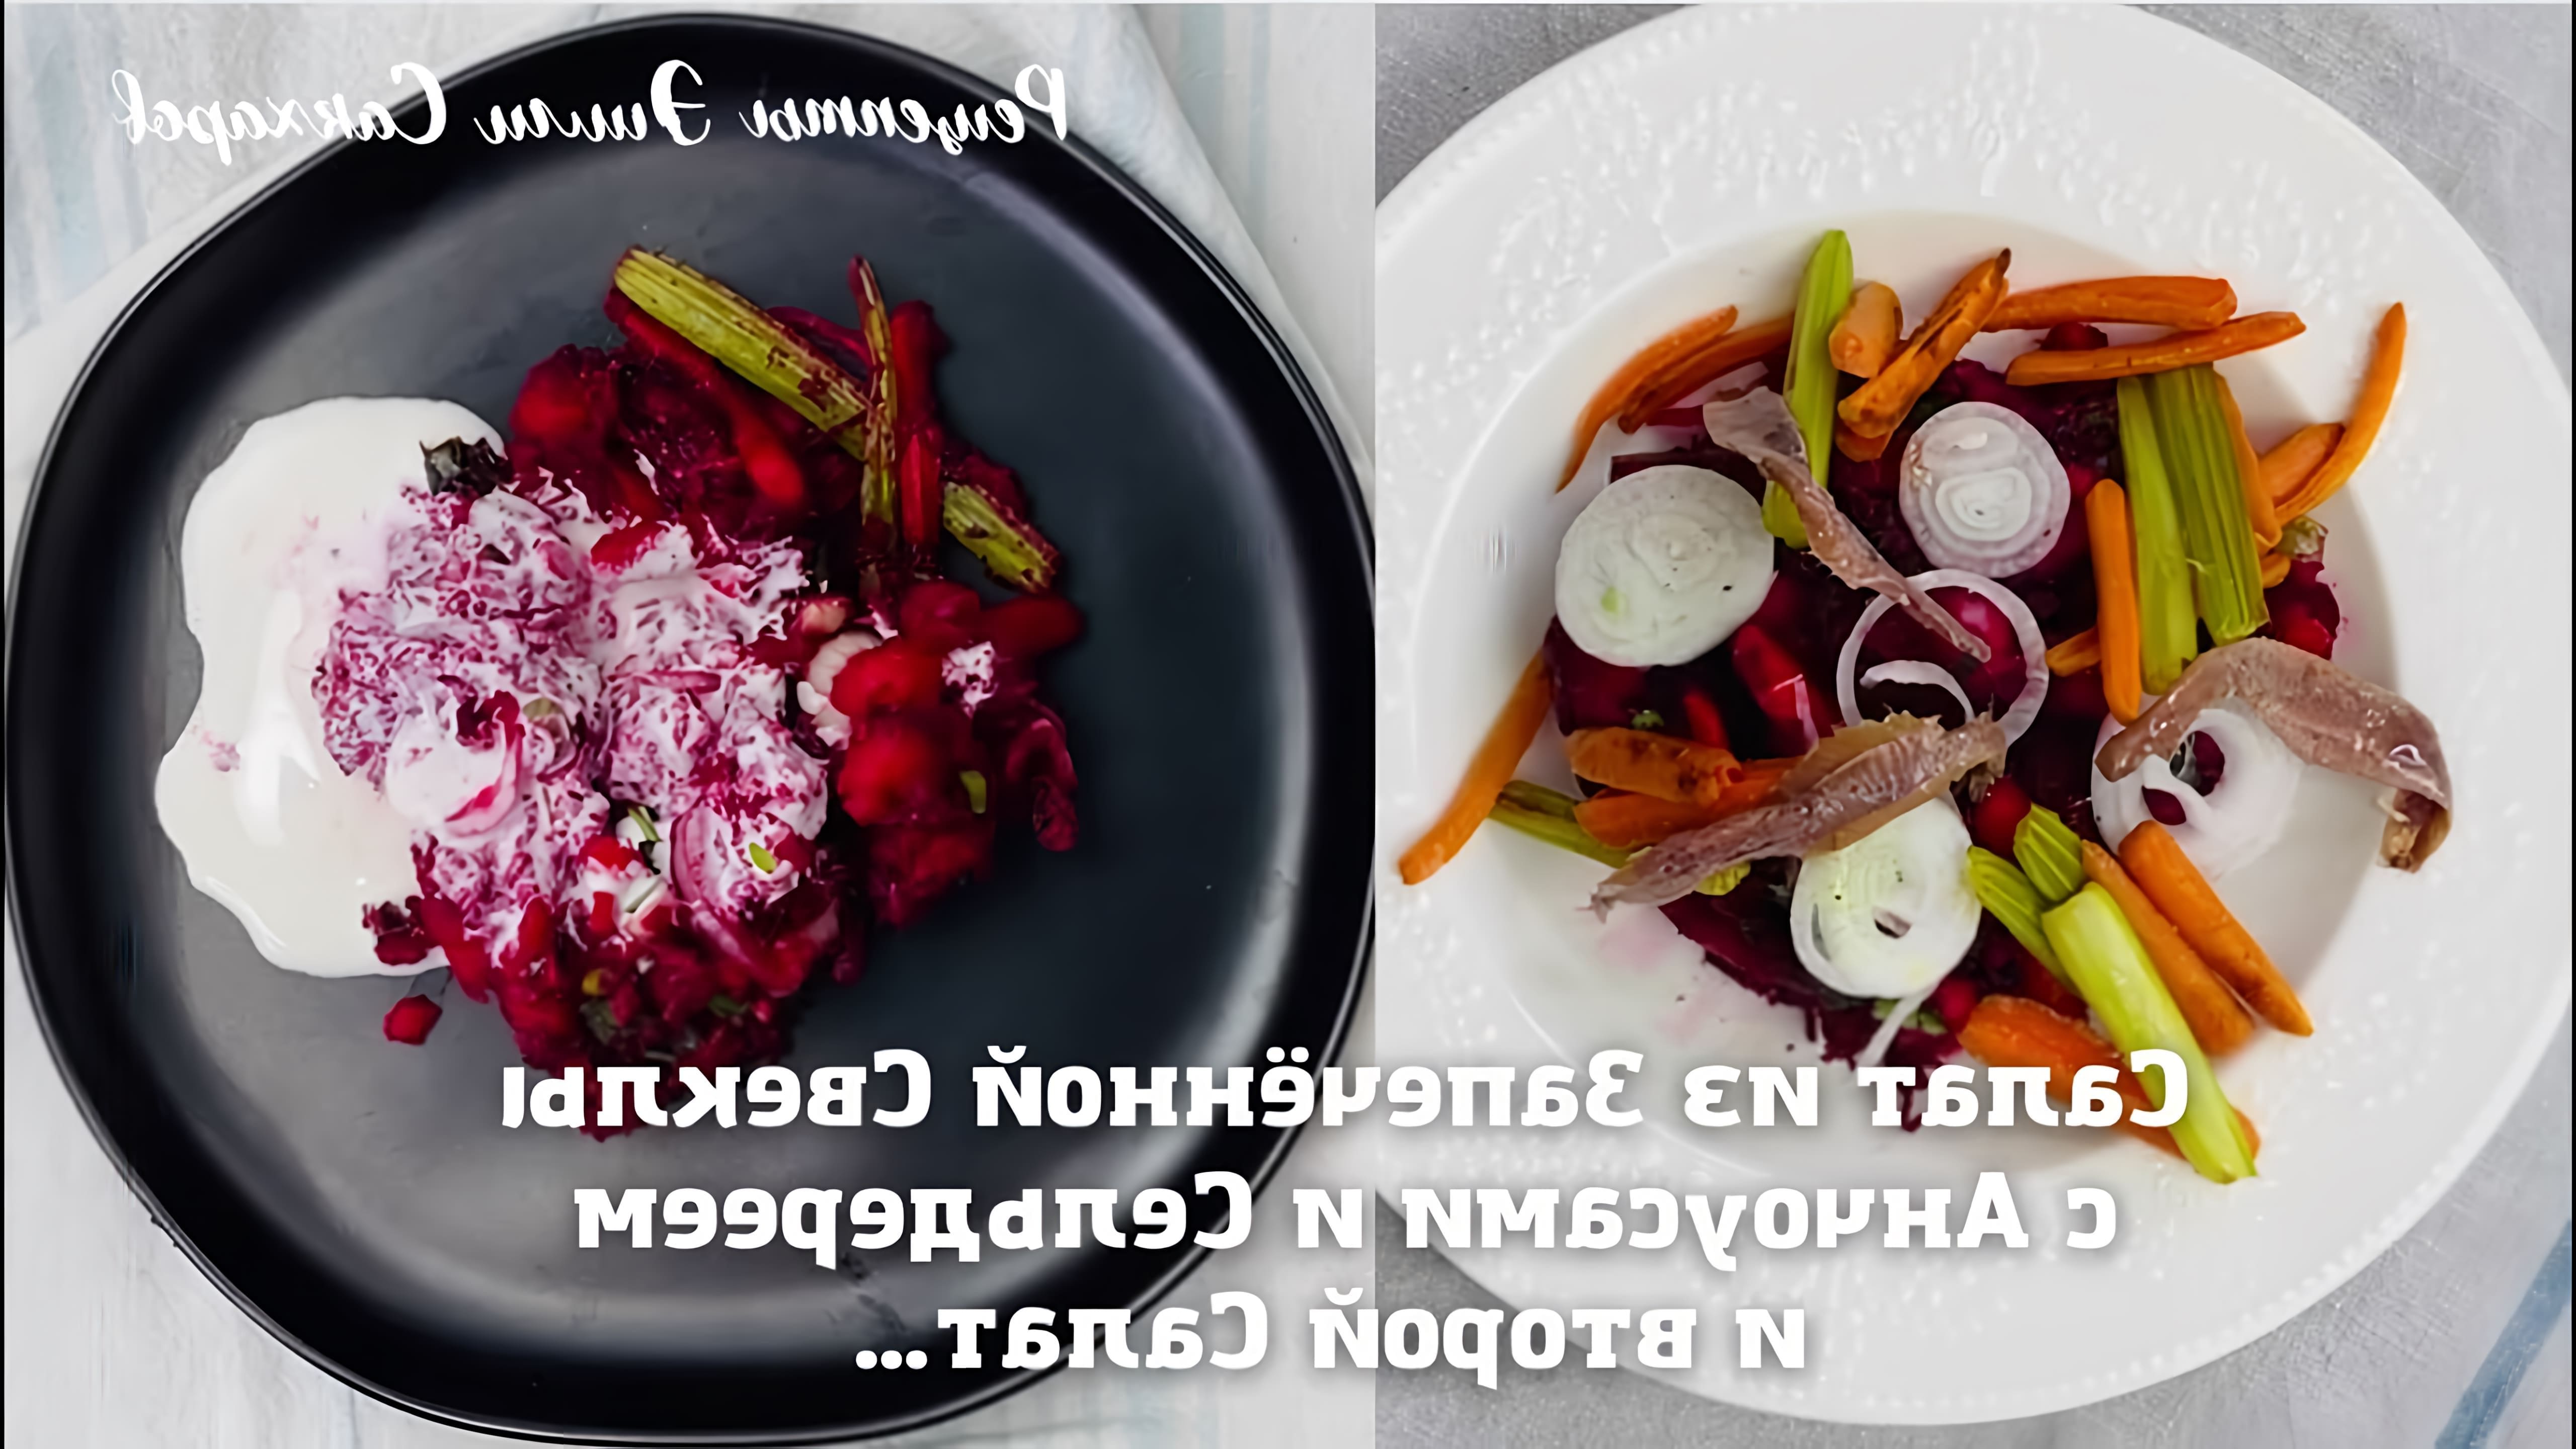 Салат из запеченной свеклы с анчоусами и сельдереем - это вкусное и полезное блюдо, которое можно приготовить в домашних условиях